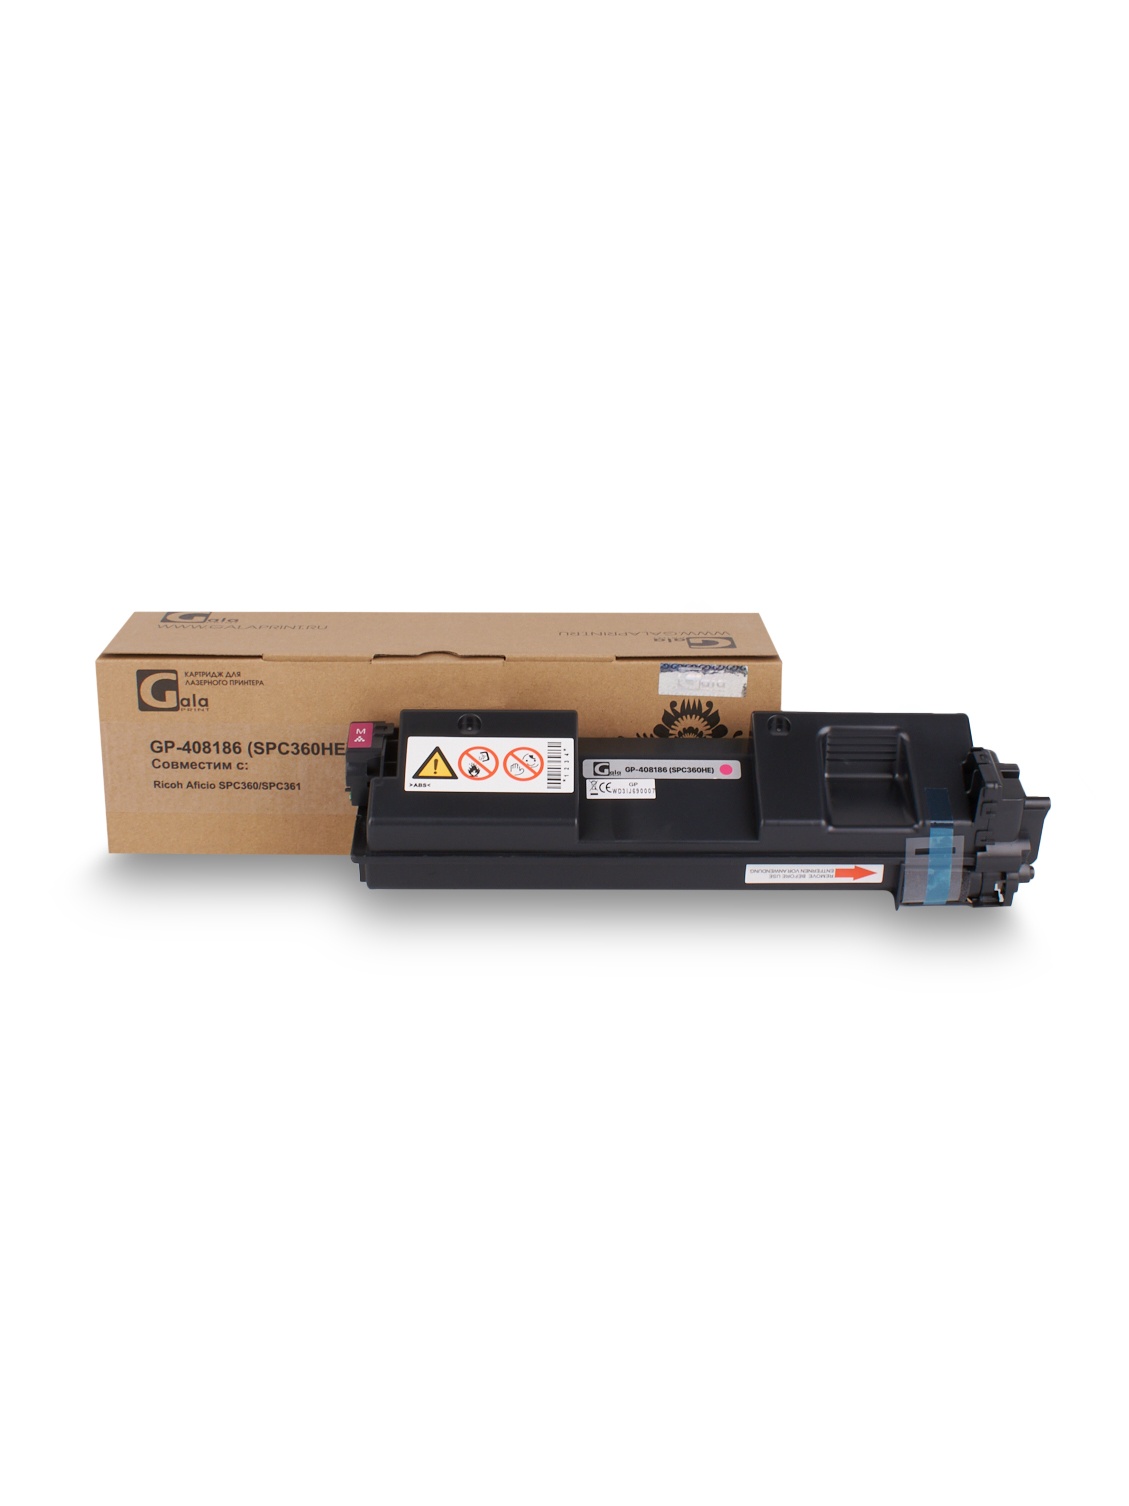 Принт-картридж GP-408186 (SP-C360HE) для принтеров Ricoh Aficio SPC360/SPC361 Magenta 6000 копий GalaPrint